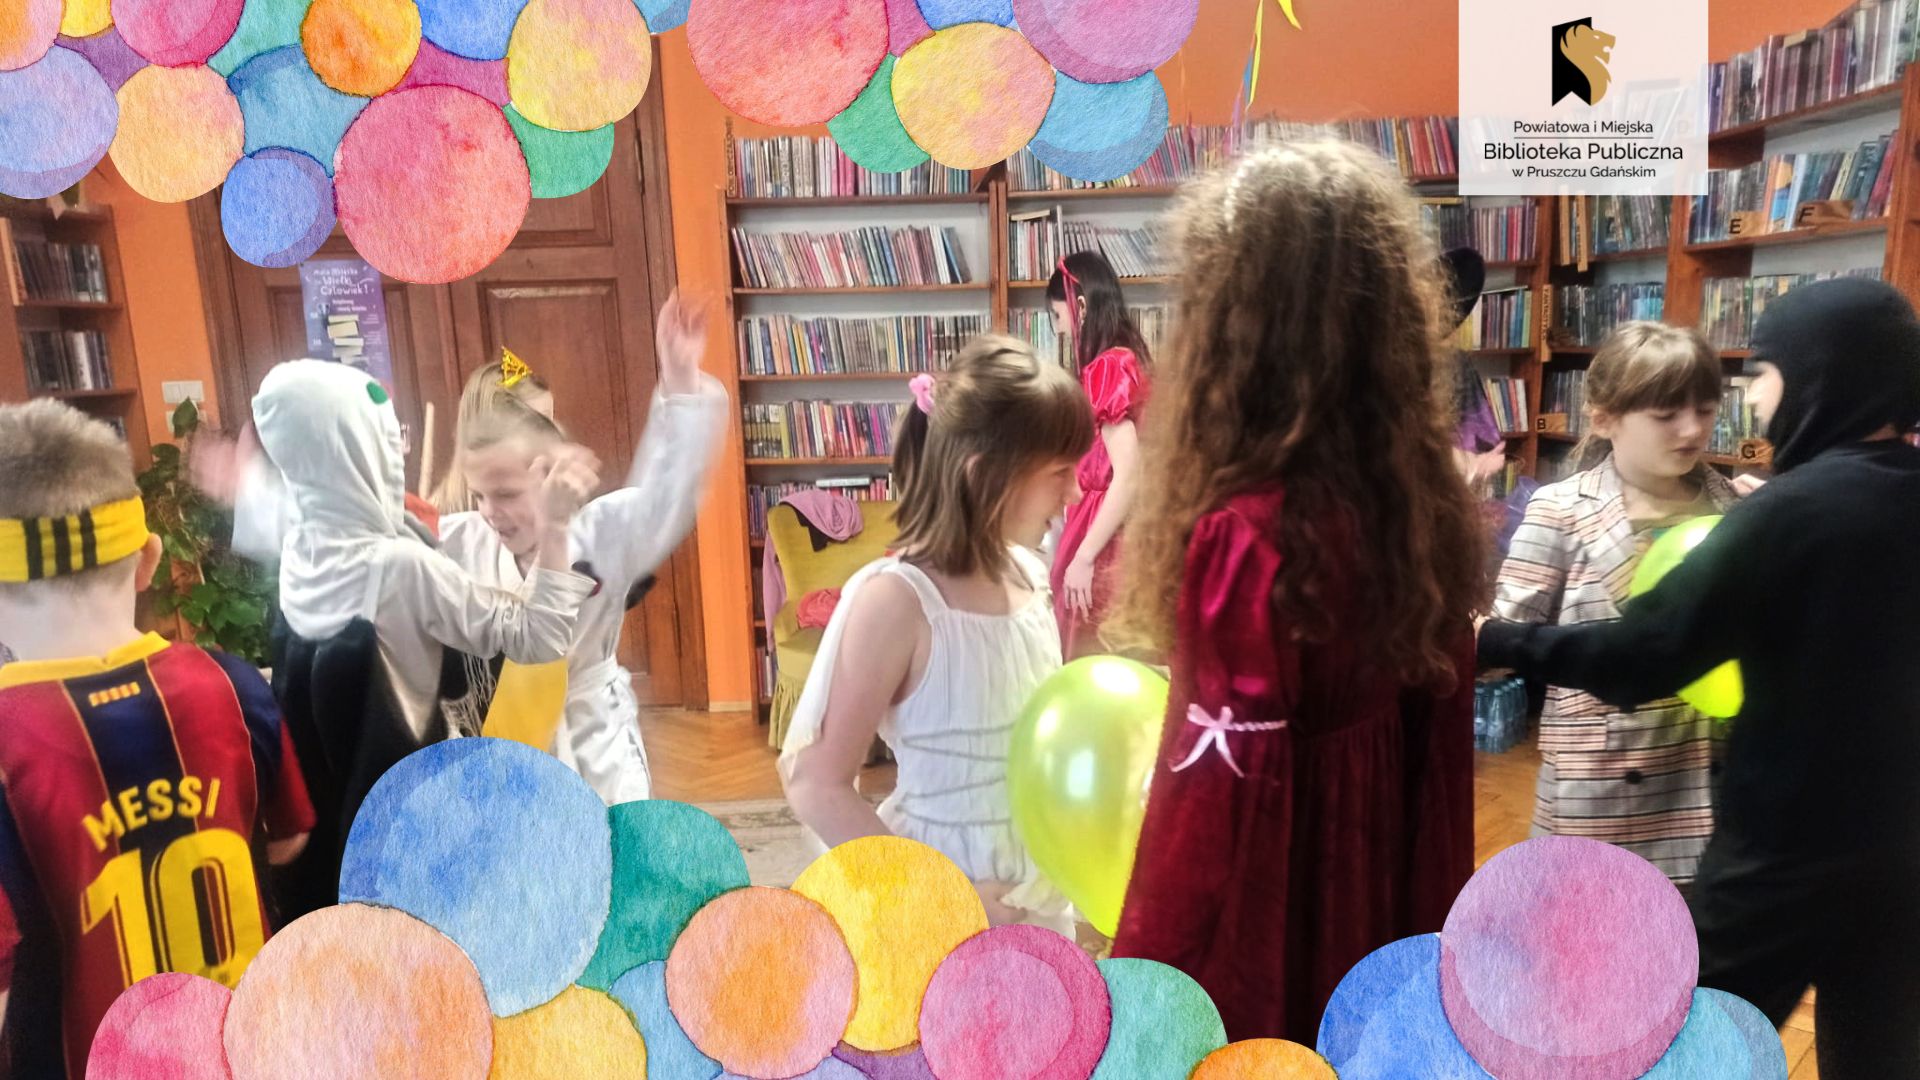 Grupa dzieci w kolorowych strojach tańczy podzielona w pary. Każda z par trzyma pomiędzy brzuchami balona.